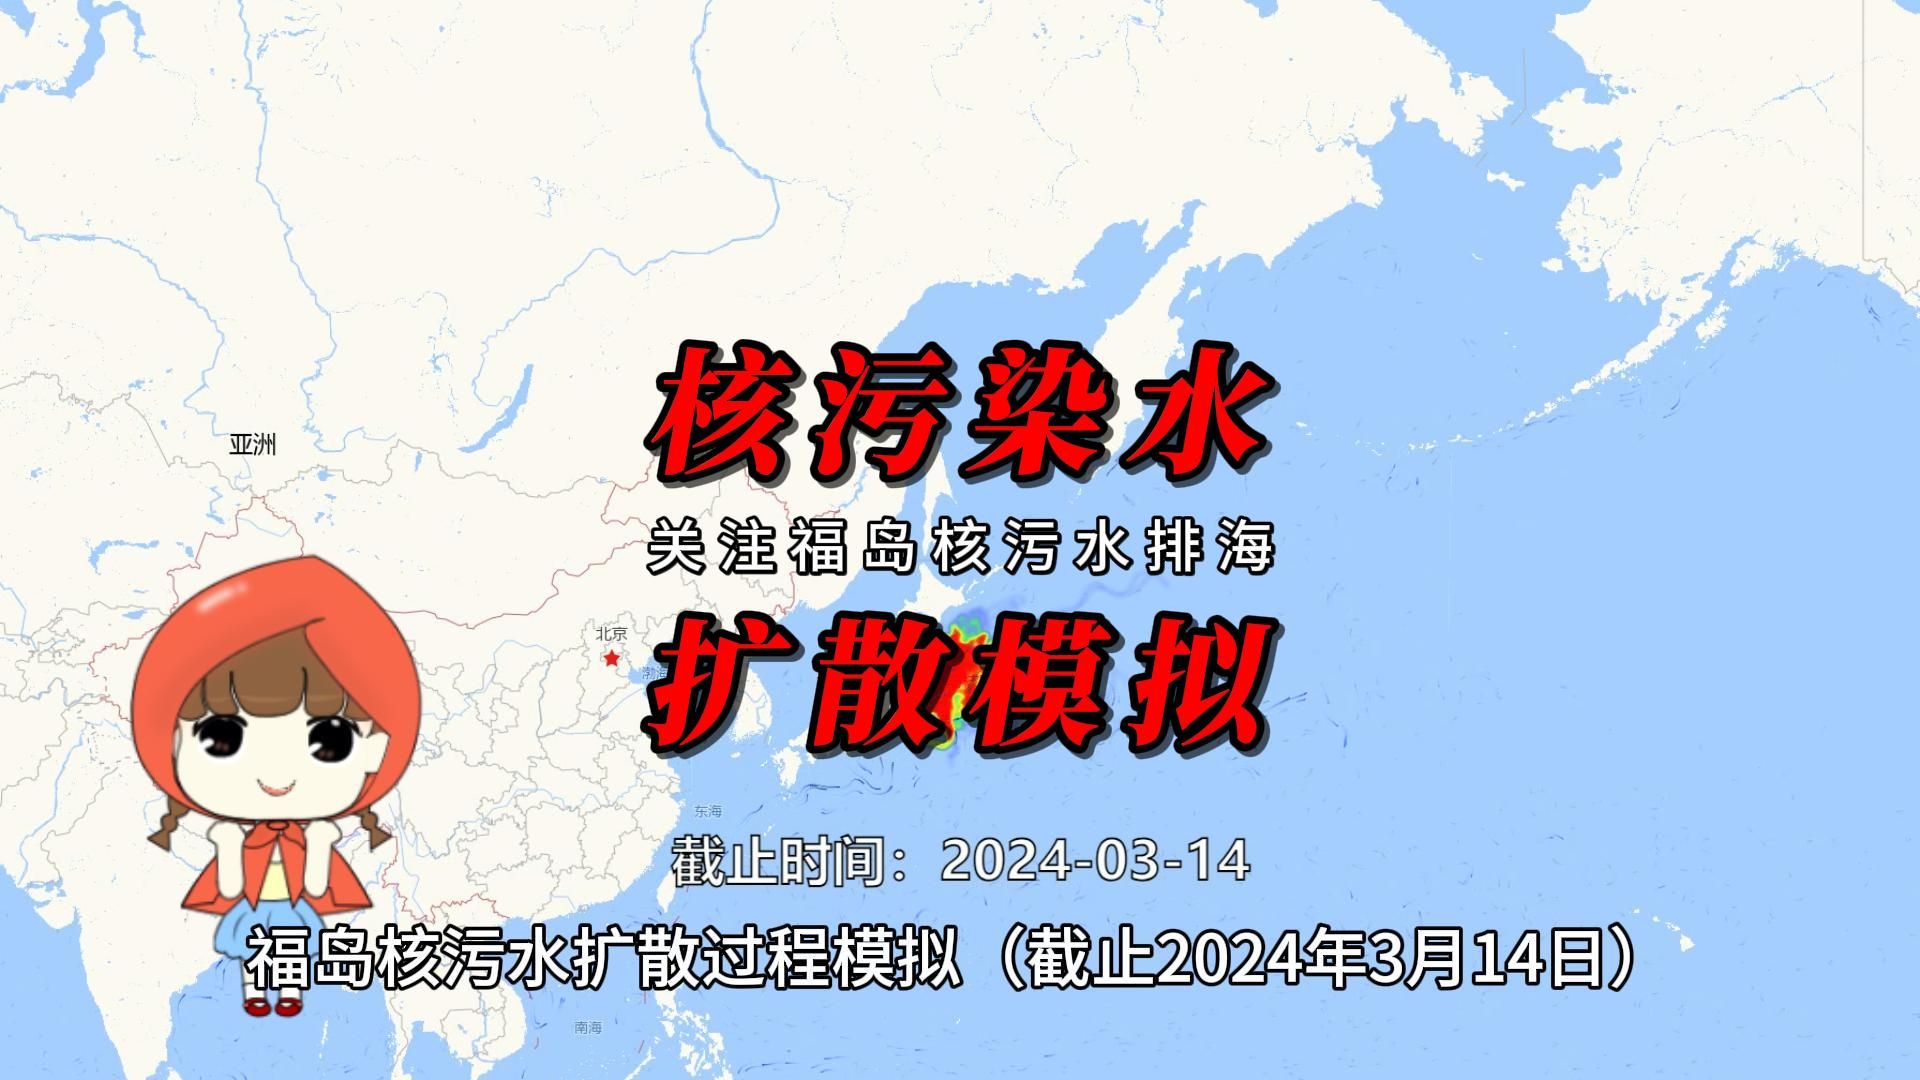 核污水到中国了吗？福岛核污水扩散过程模拟（截止2024年3月14日）